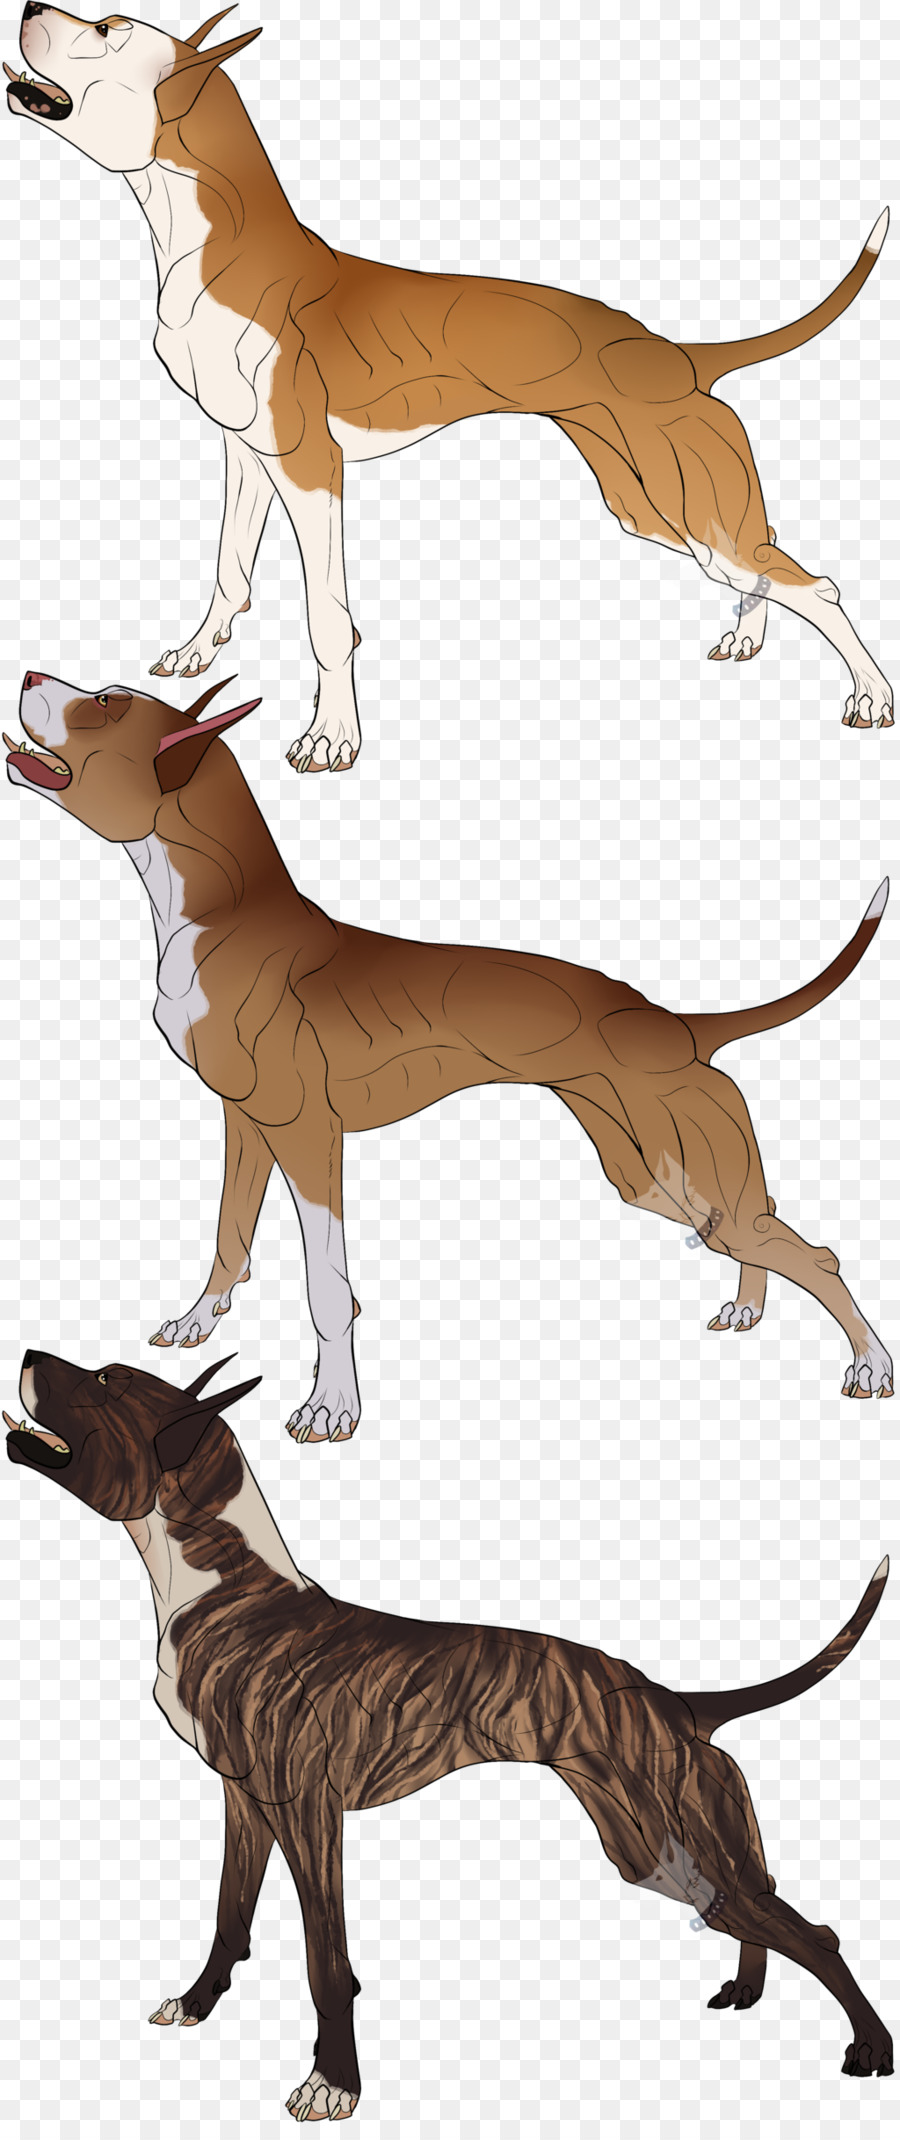 Italienischer Windhund-Cartoon-Charakter - Cane Corso